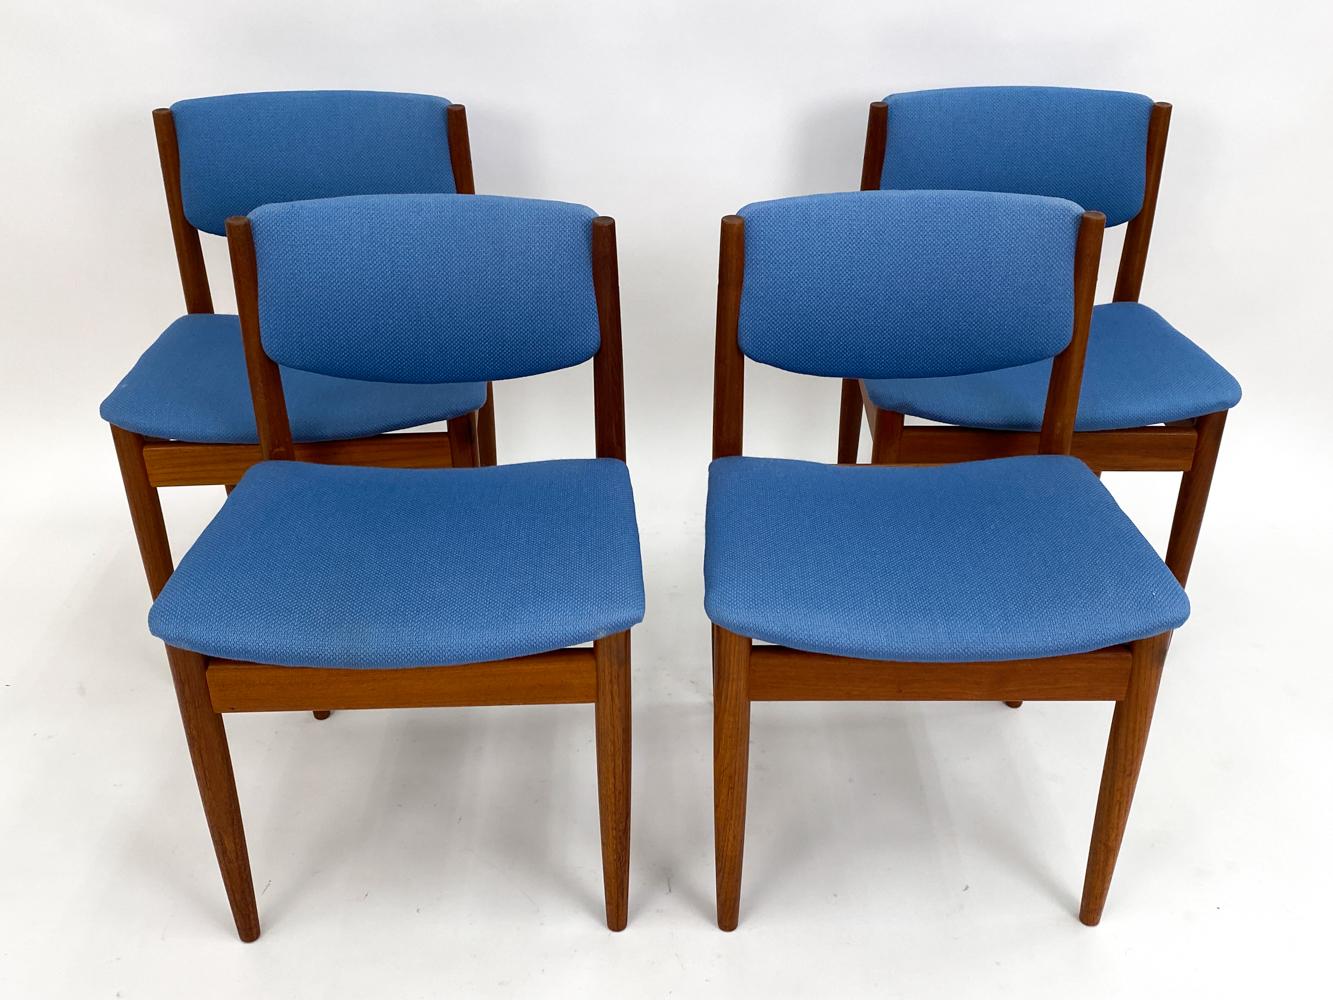 Entrez dans l'âge d'or du design du milieu du siècle avec cet ensemble exquis de quatre chaises Finn Juhl modèle 197 en teck. Témoignage du savoir-faire inégalé et du style visionnaire de Juhls, chaque chaise est sculptée dans un bois de teck riche